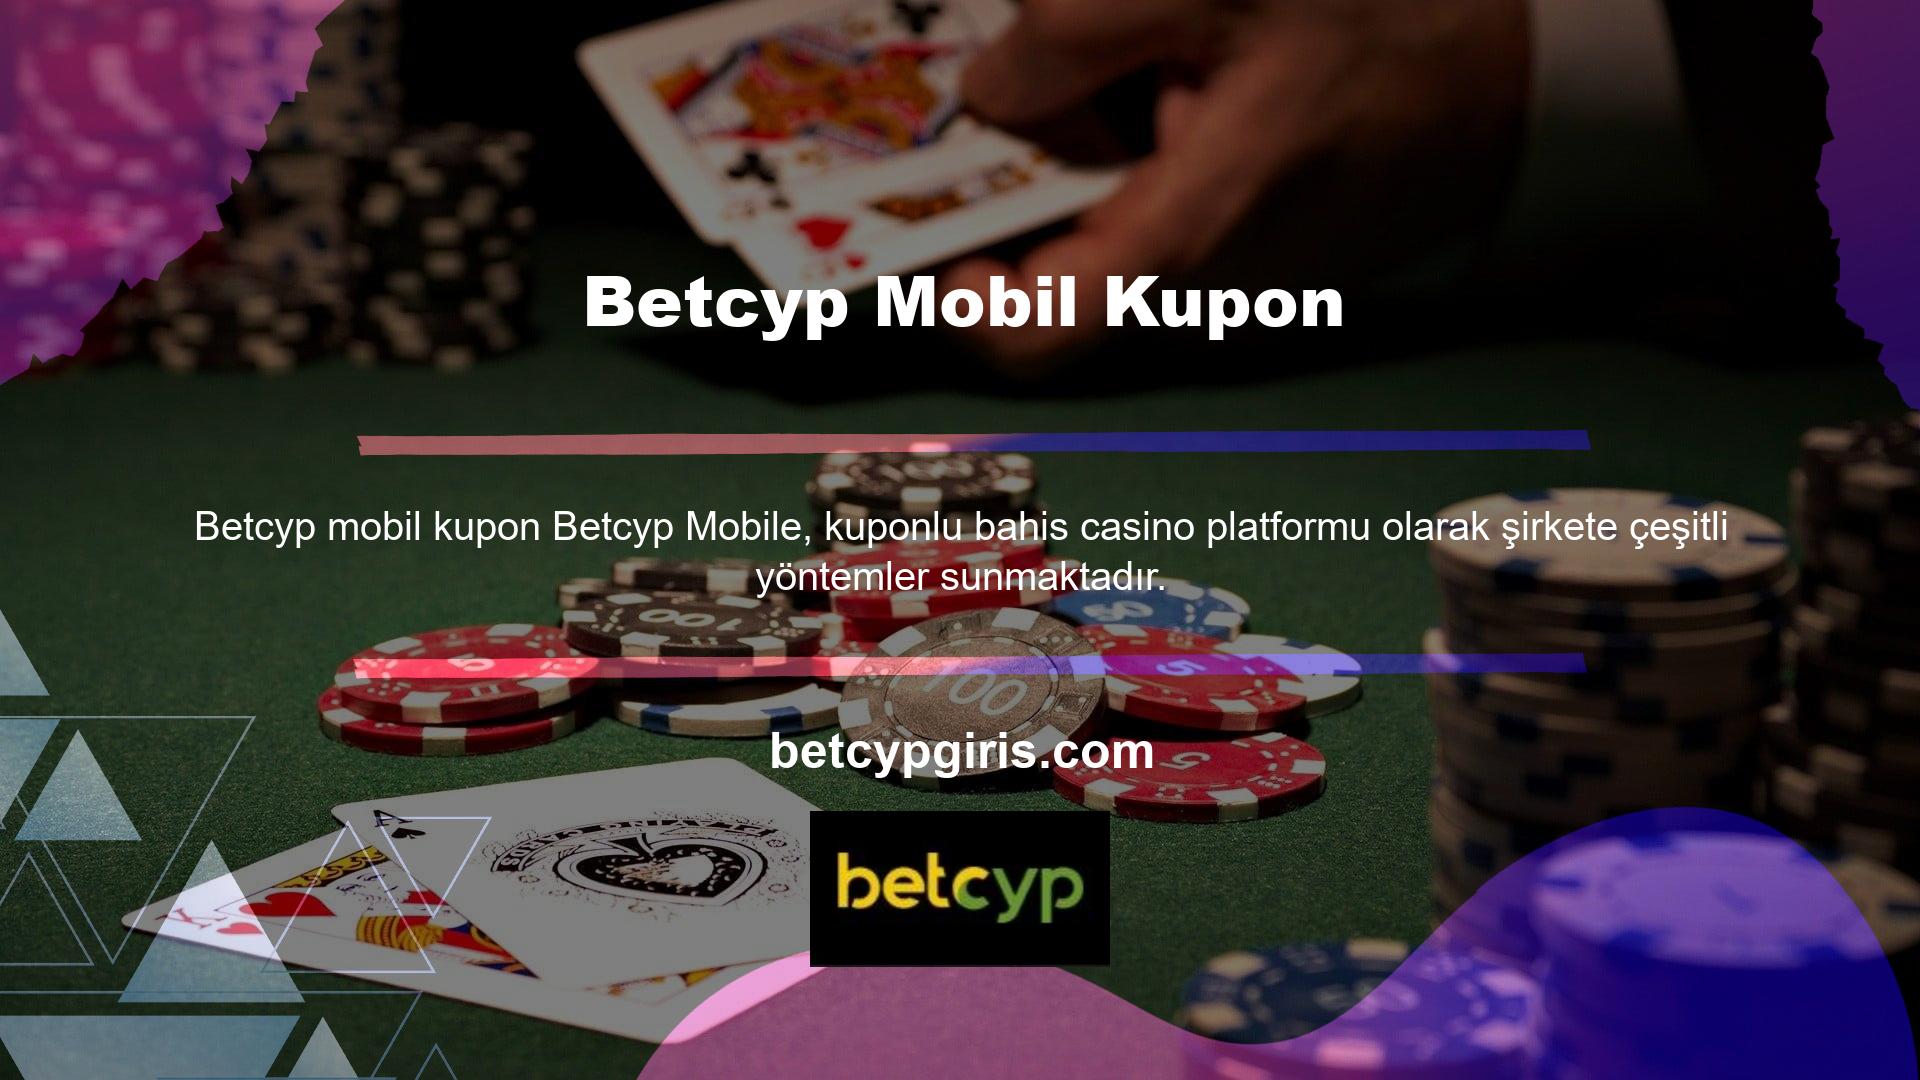 Aralarından seçim Betcyp mobil kupon popüler yer imlerine eklenmiş web sitelerinden biri Betcyp